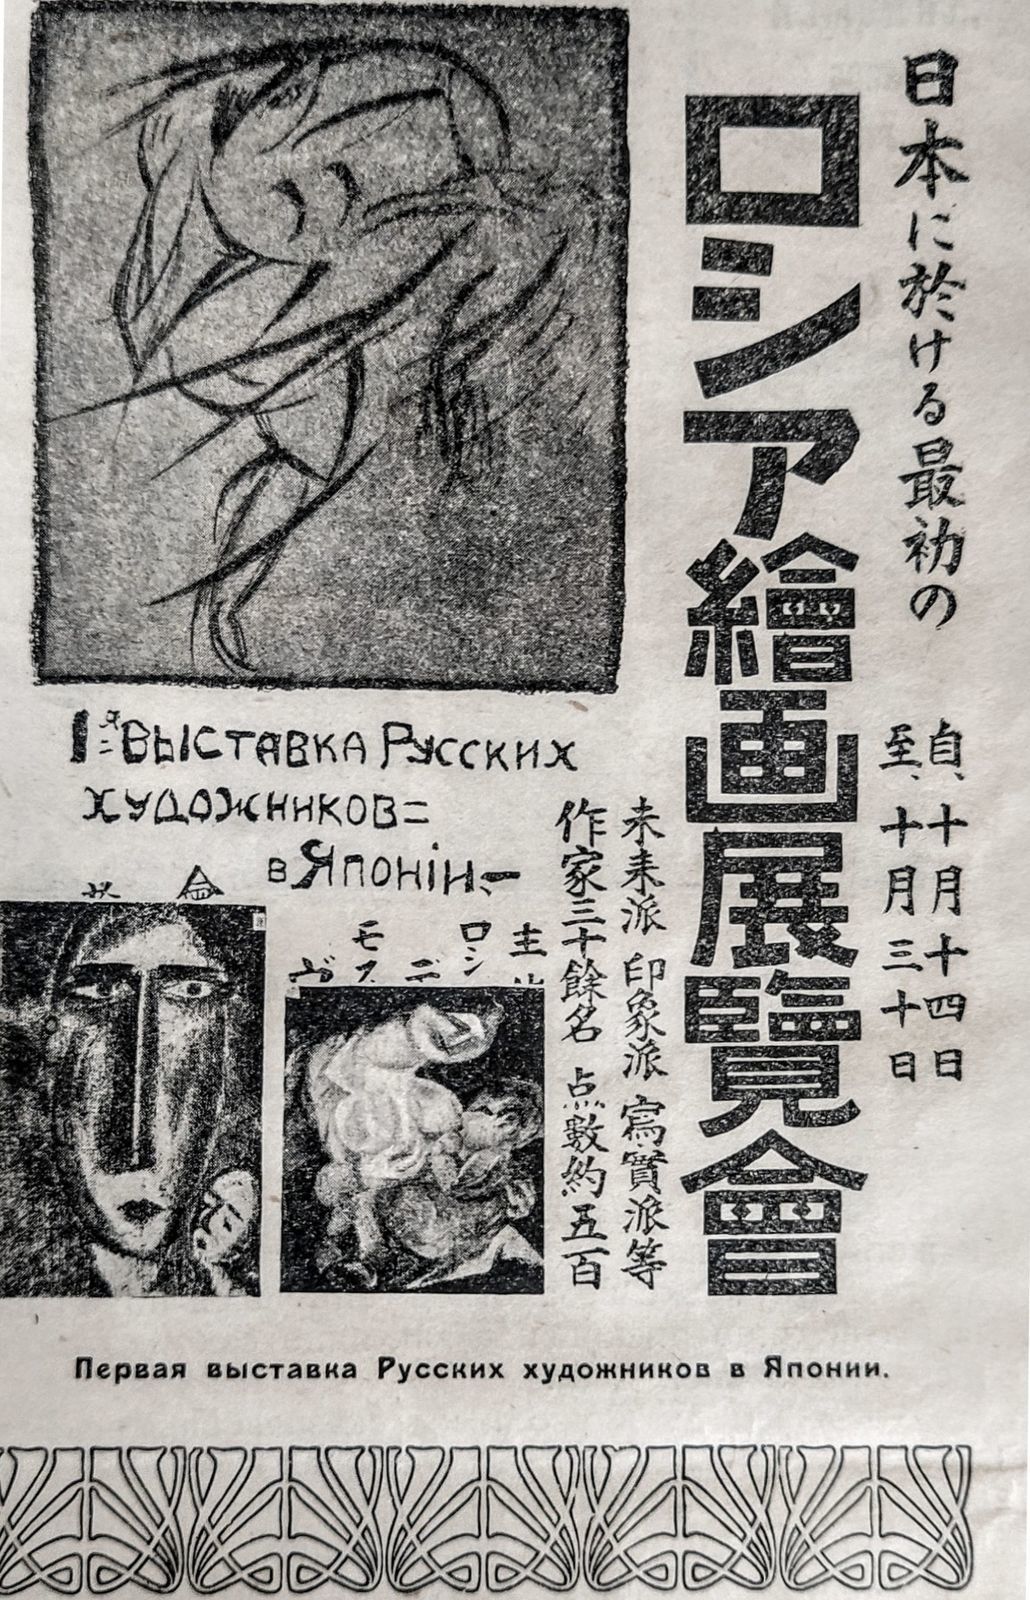 Poster for the 1st Exhibition of Russian Artists in Japan, Tokyo, 1920. Image from the magazine Vsemirnaya illyustratsiya, issue V, 1922 Viktor Belozerov archive